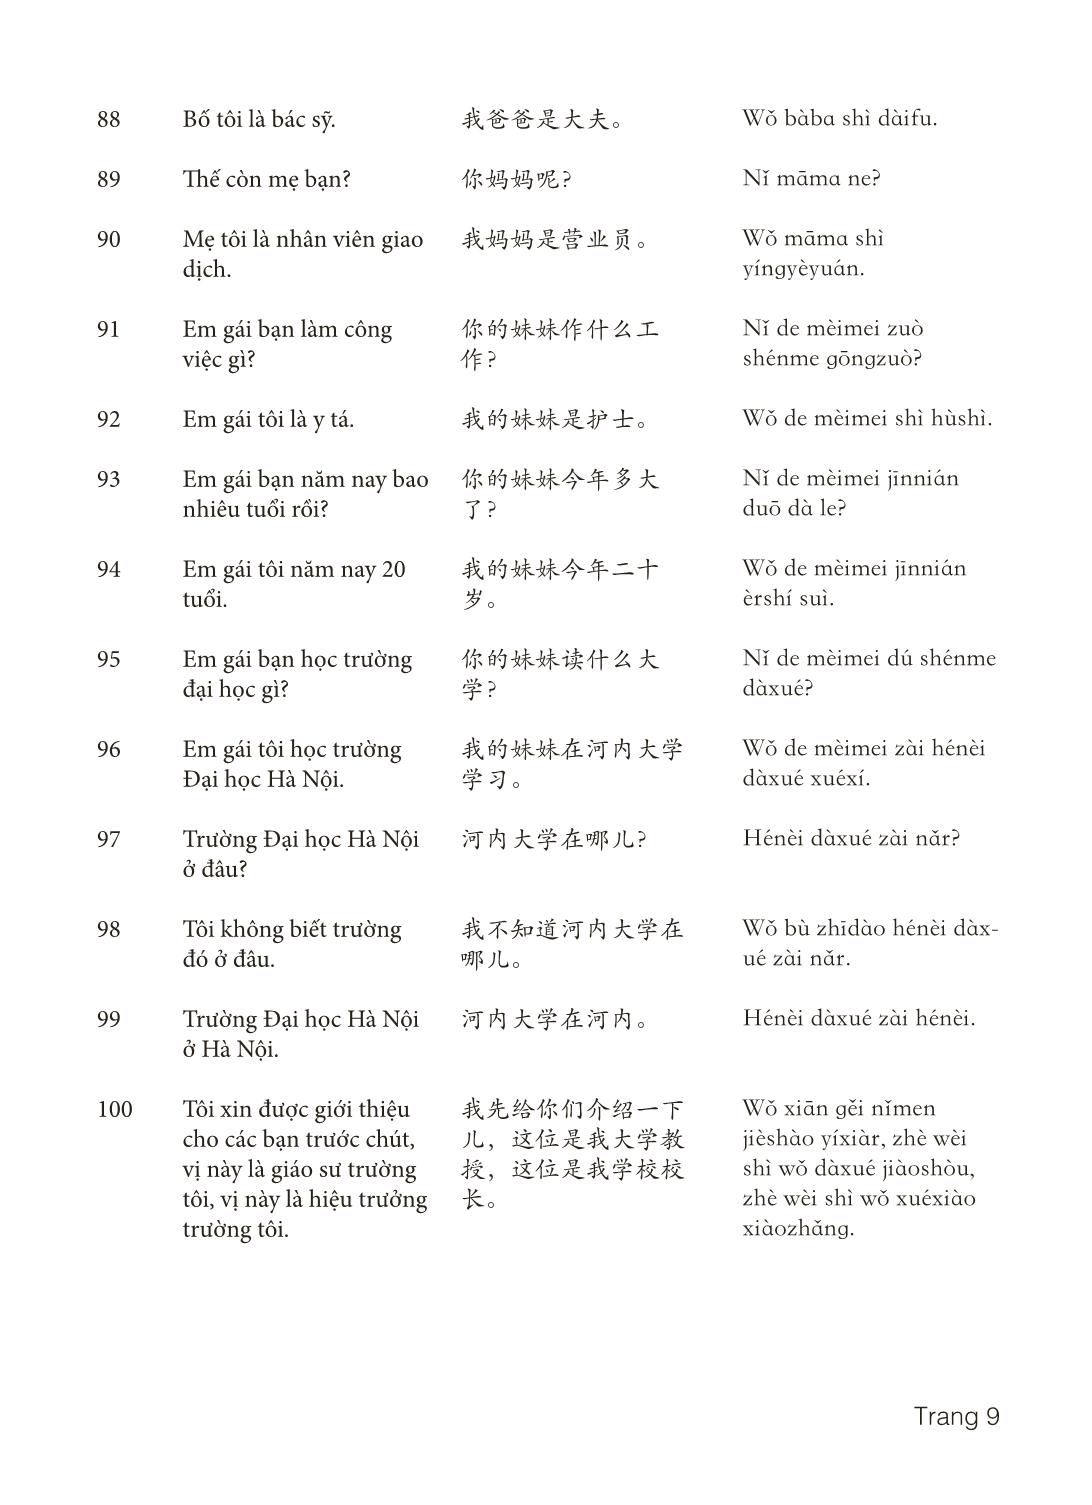 3000 Câu đàm thoại tiếng Hoa - Phần 2 trang 9